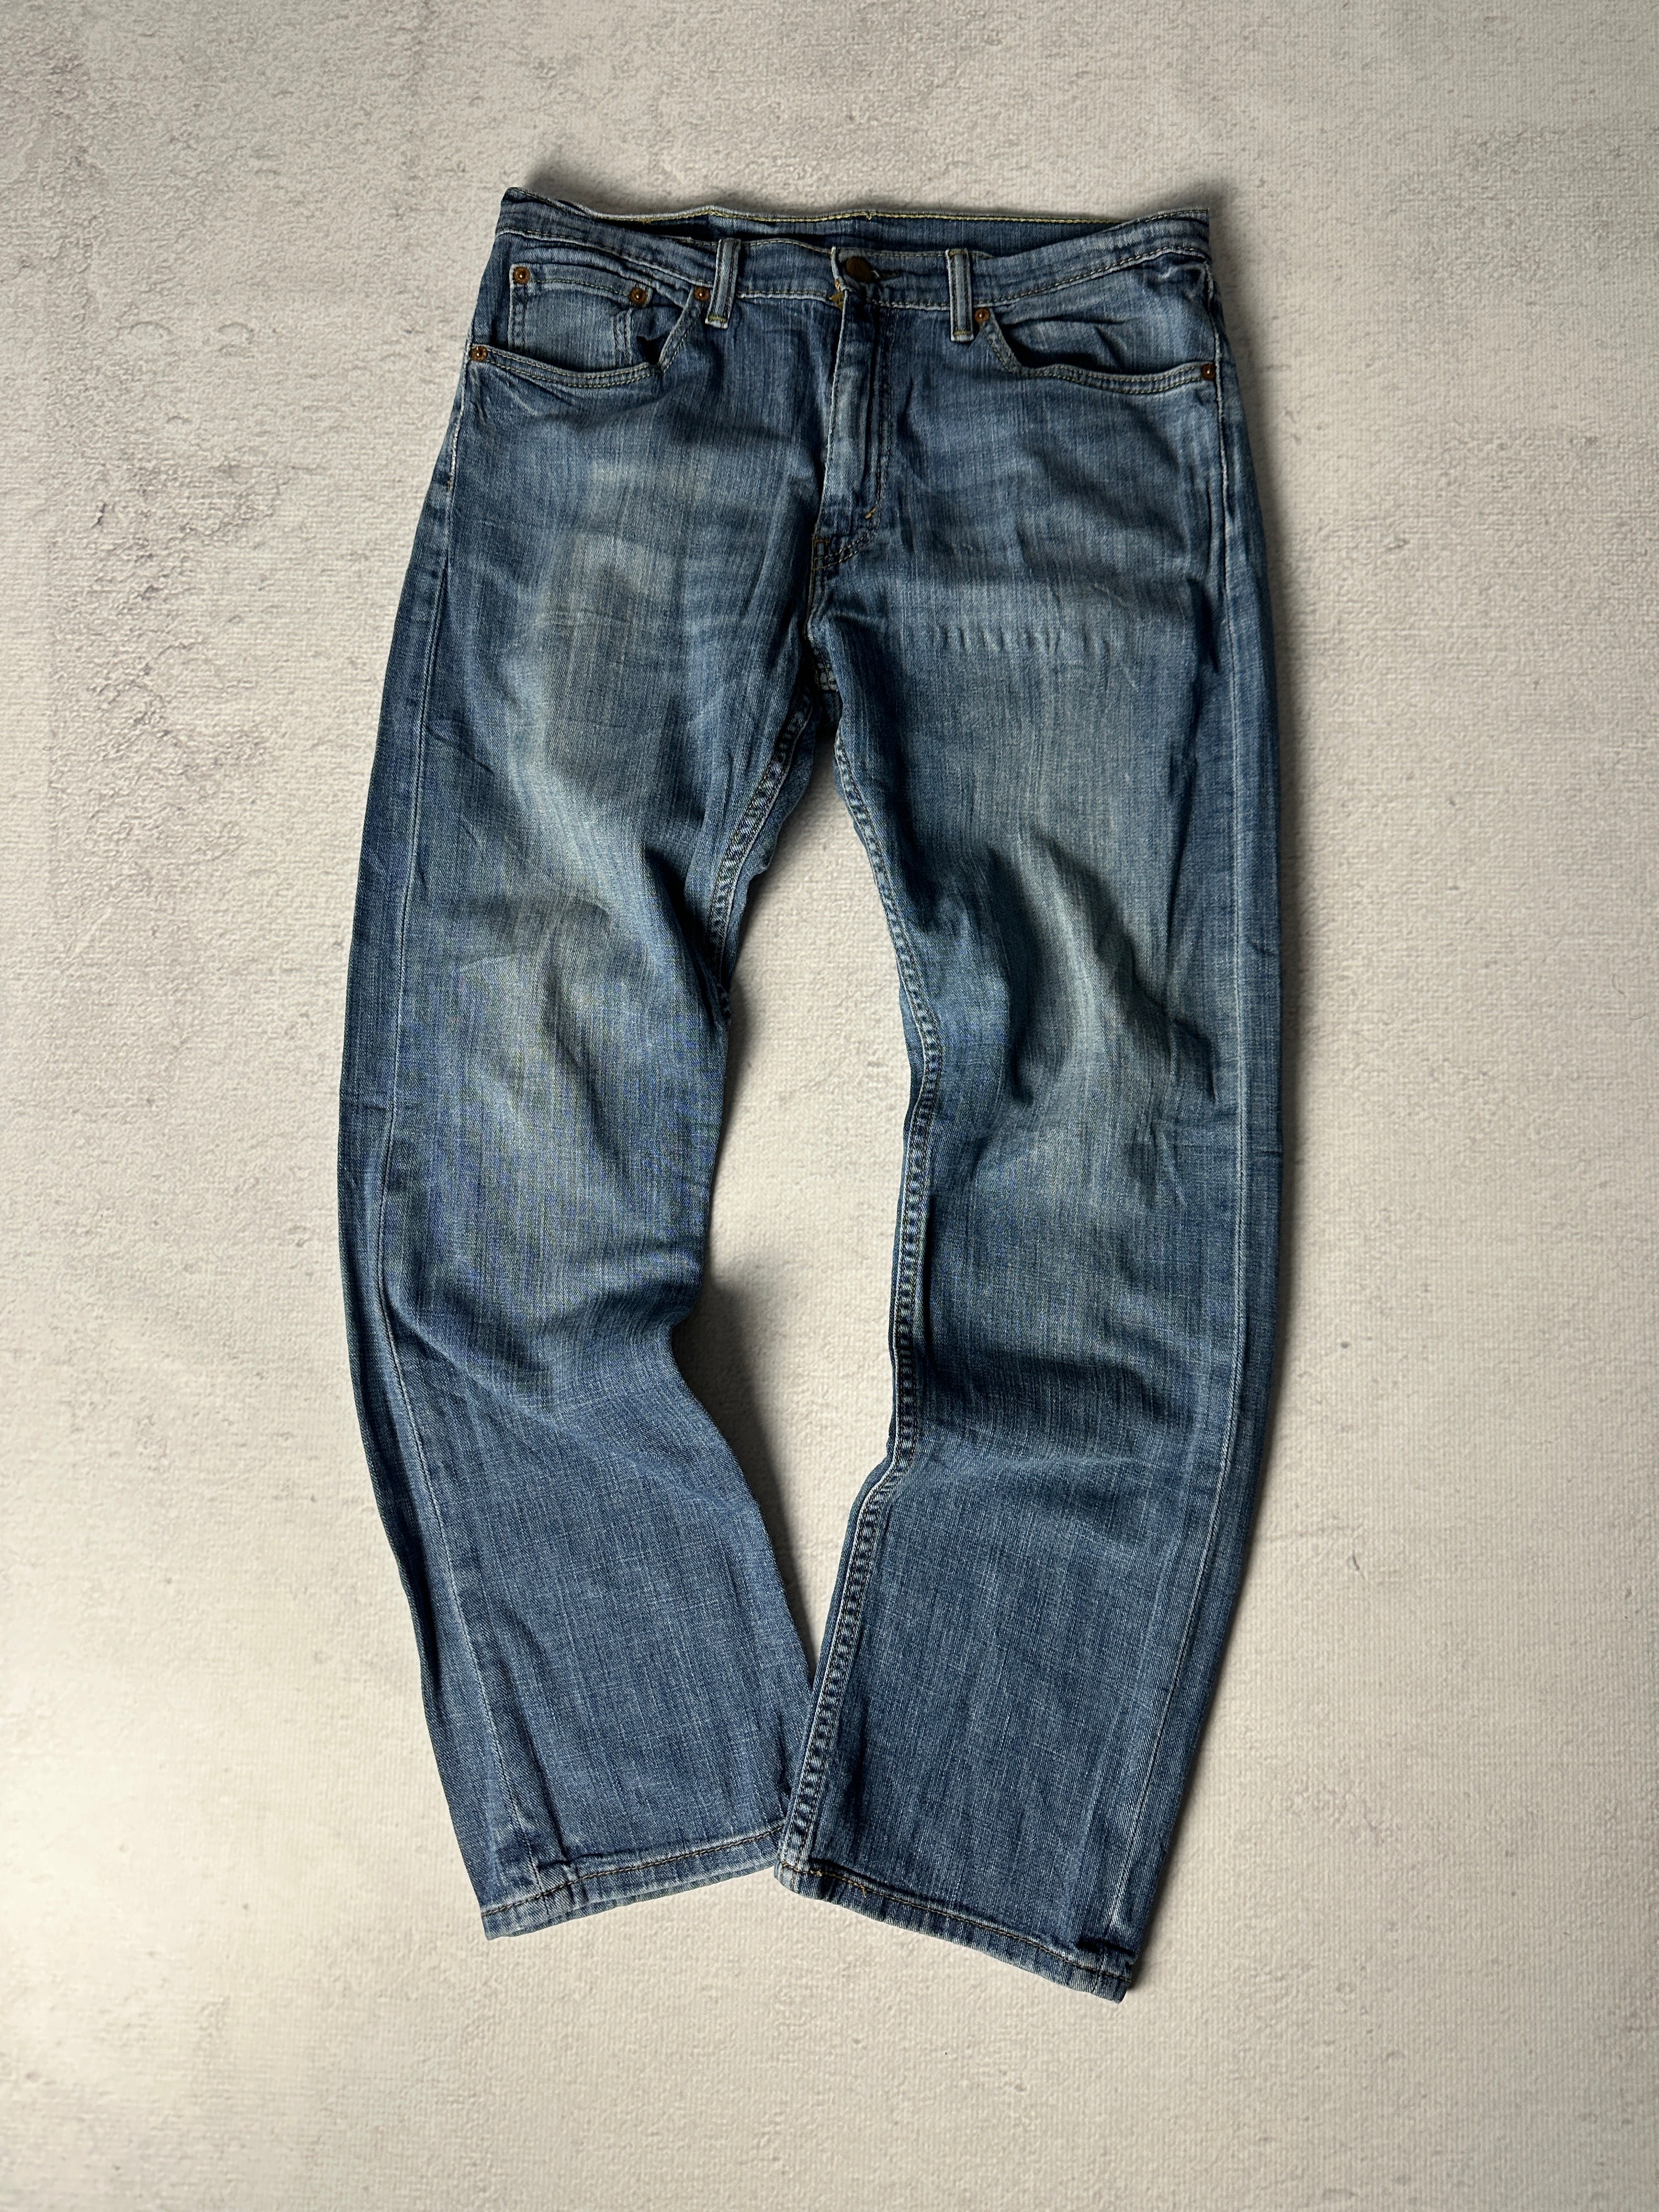 Vintage Levis 505 Jeans - Men's 34W30L